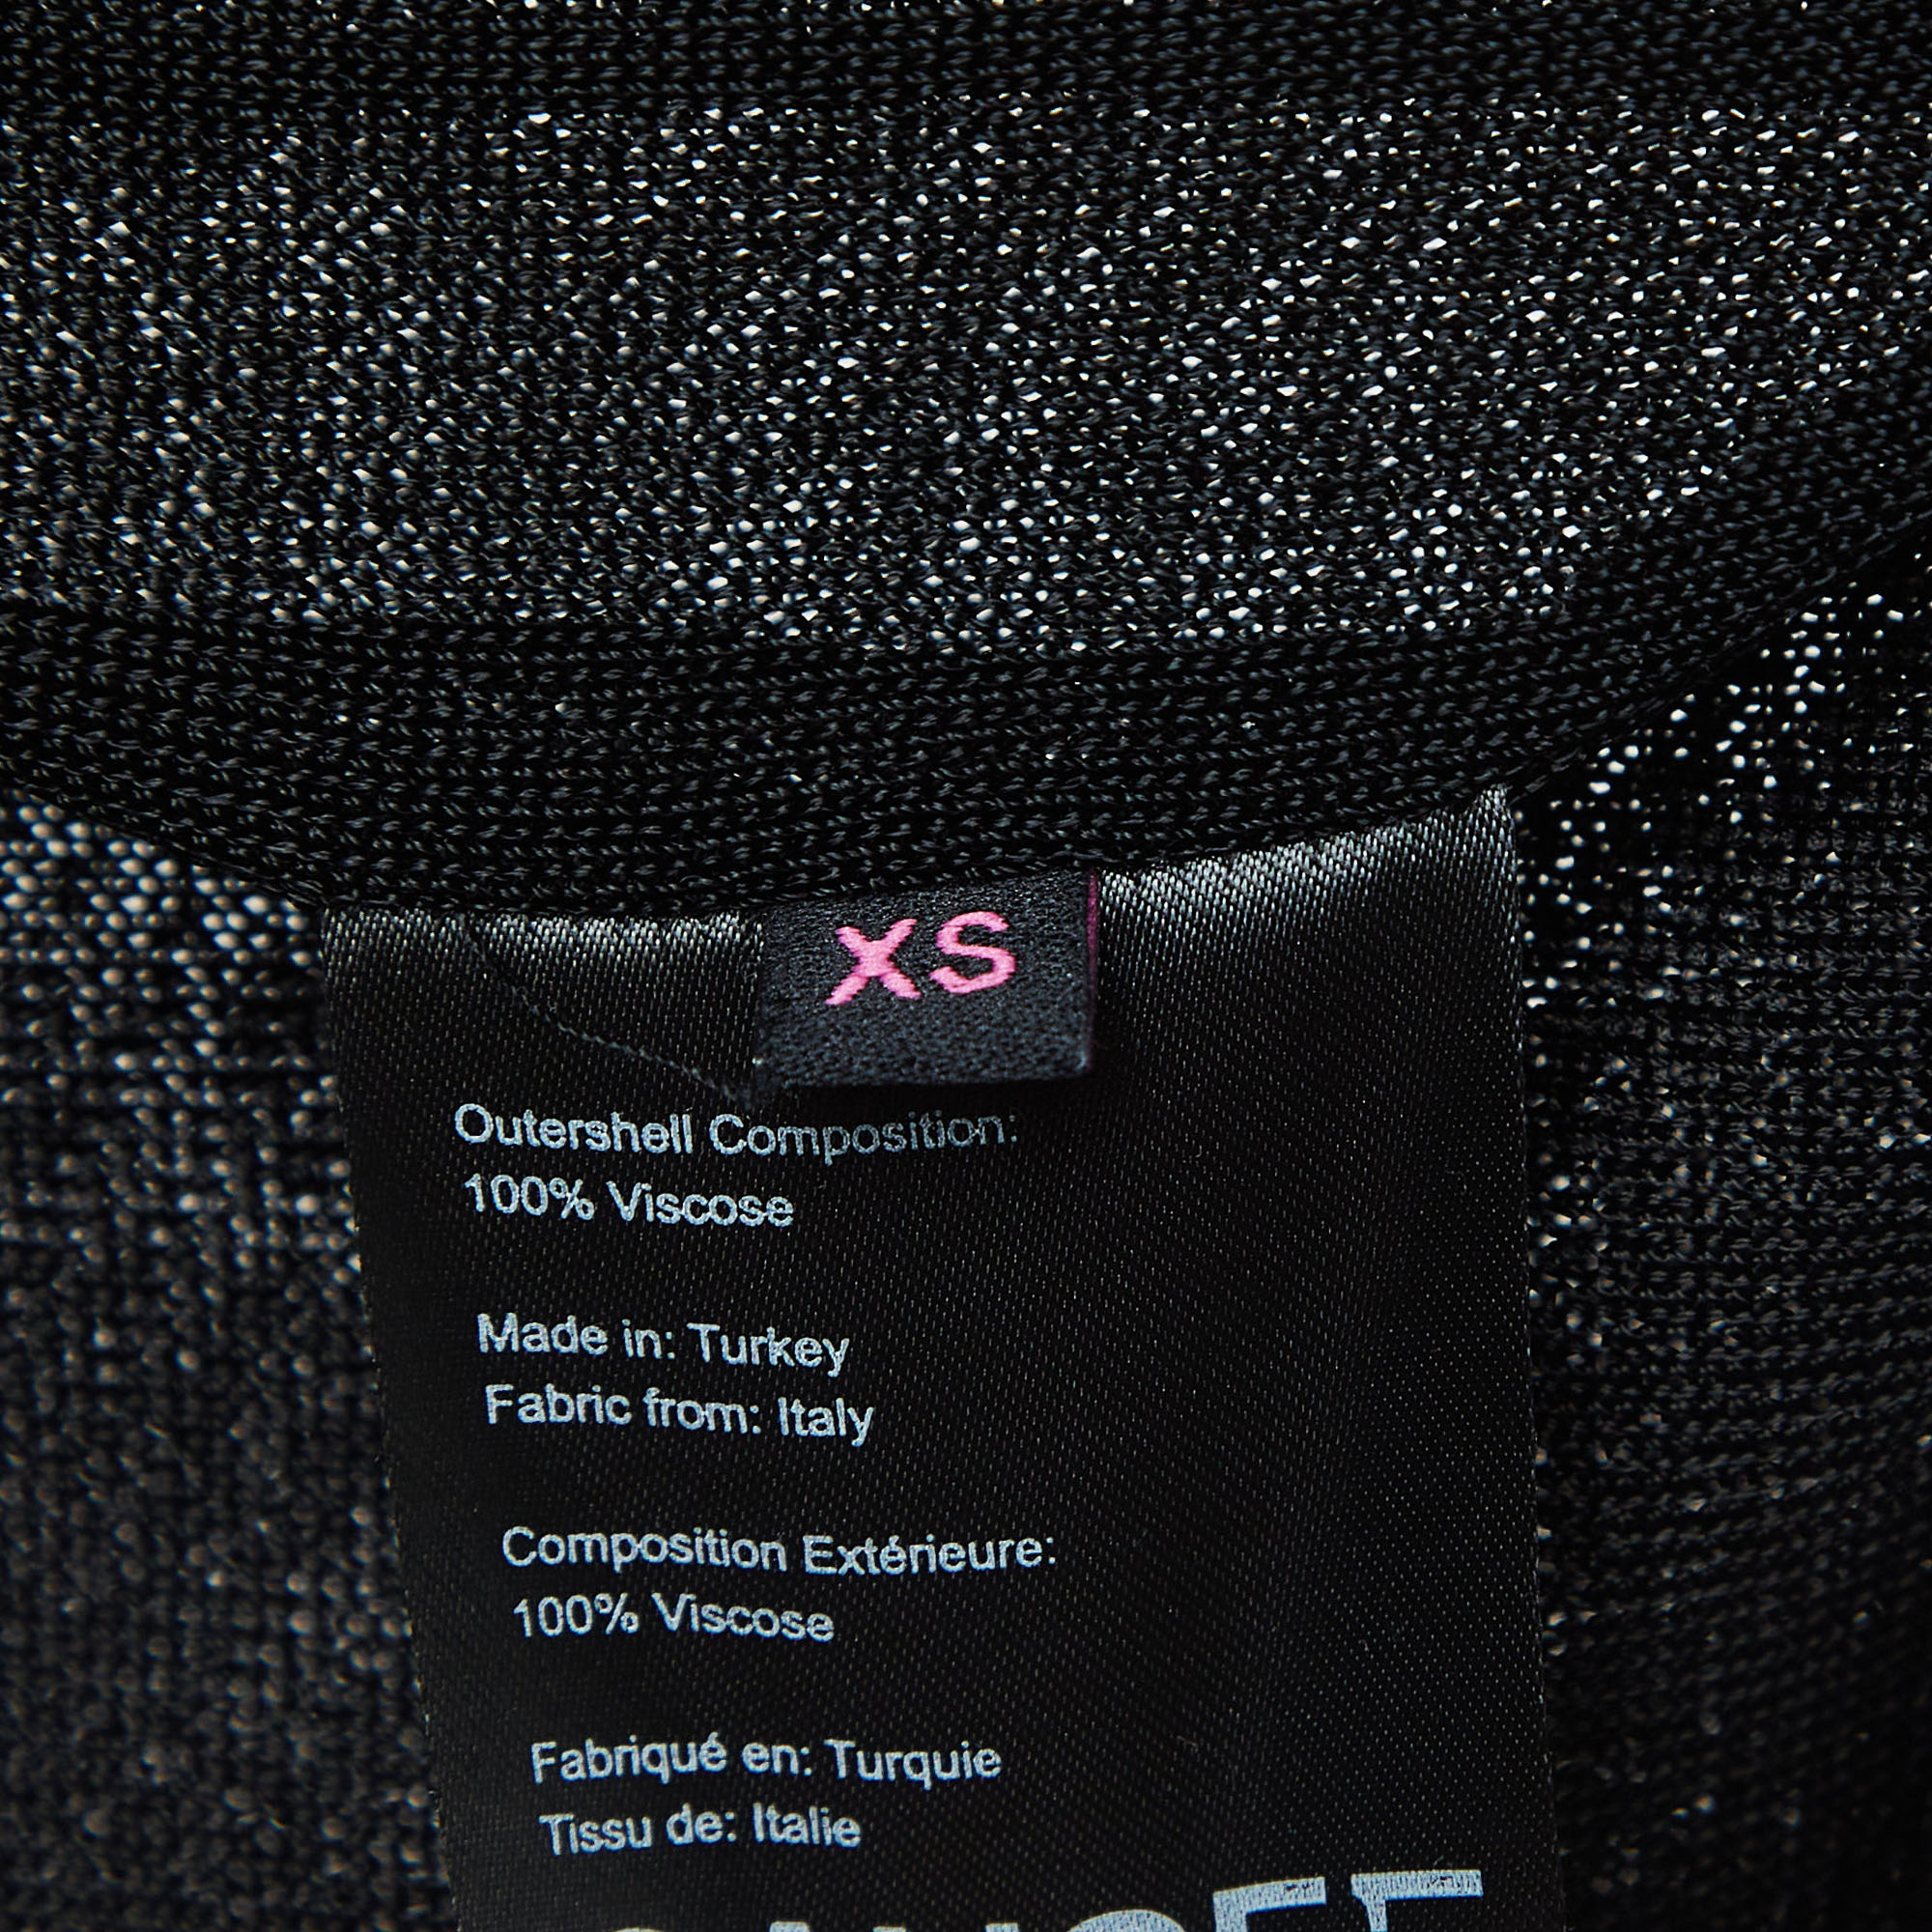 Gauge81 Black Knit Chain Embellished One-Shoulder Mini Dress XS